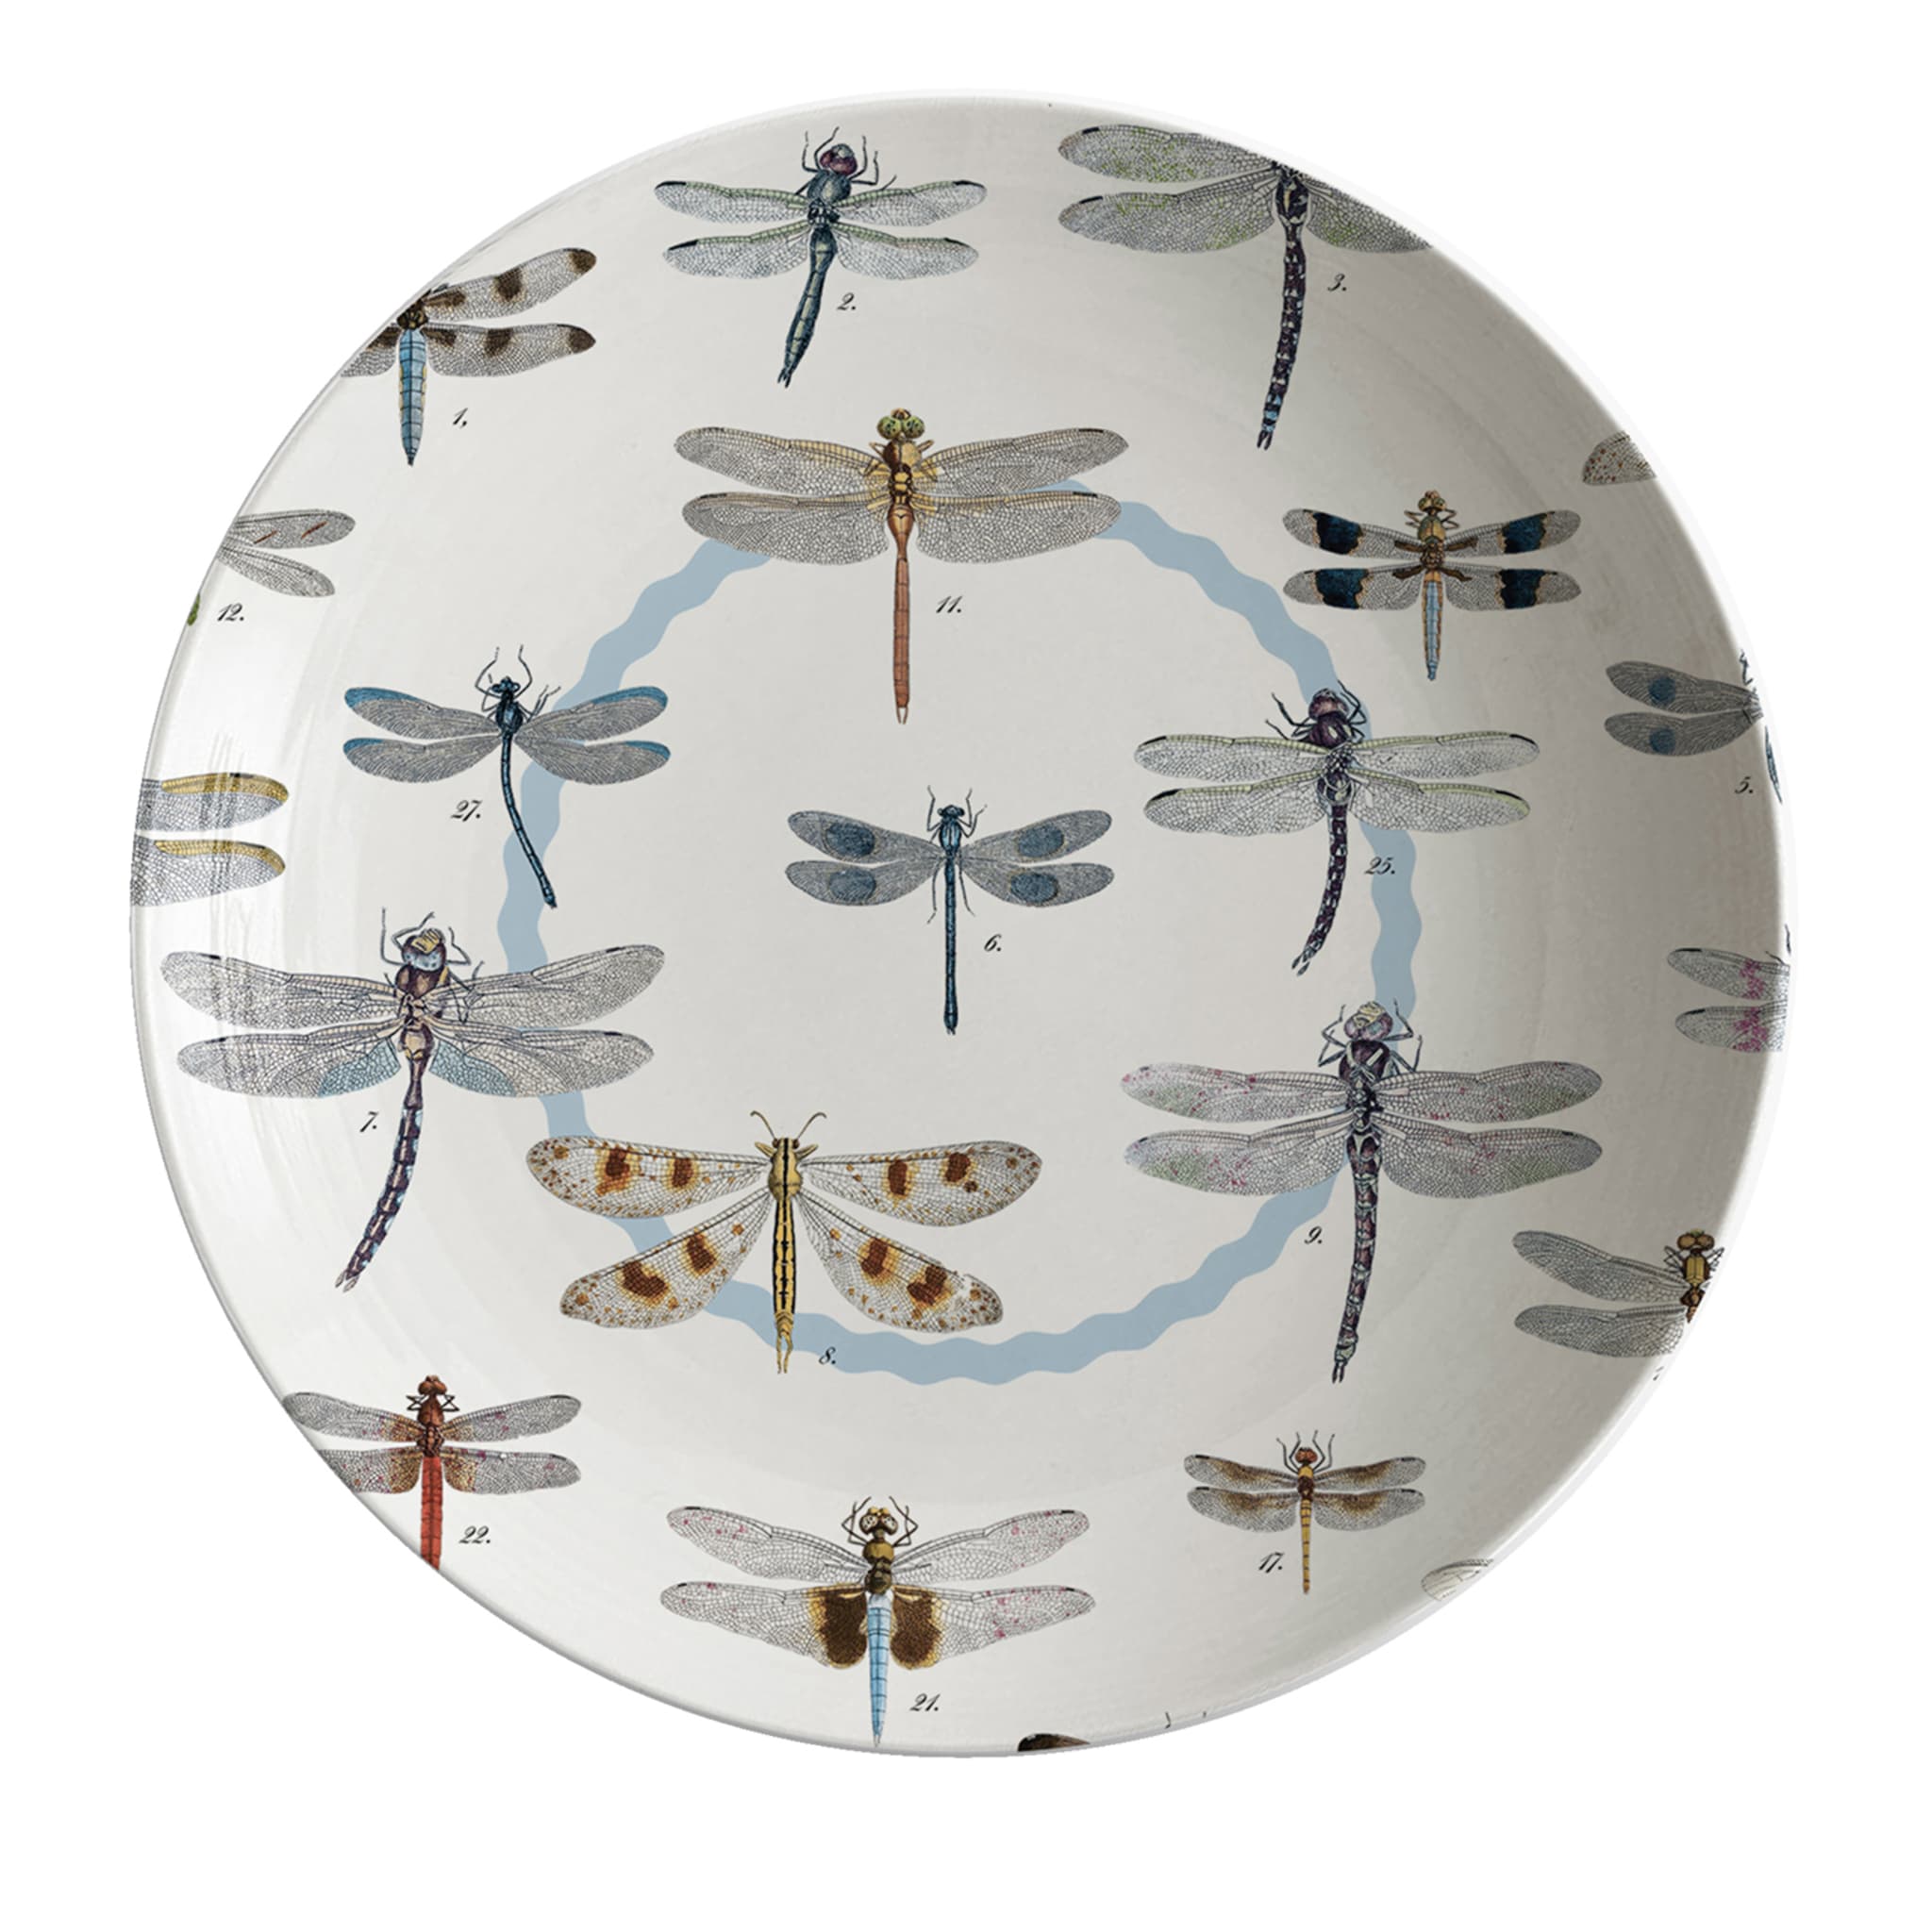 Cabinet De Curiosités Porcelain Soup Plate With Dragonflies - Main view